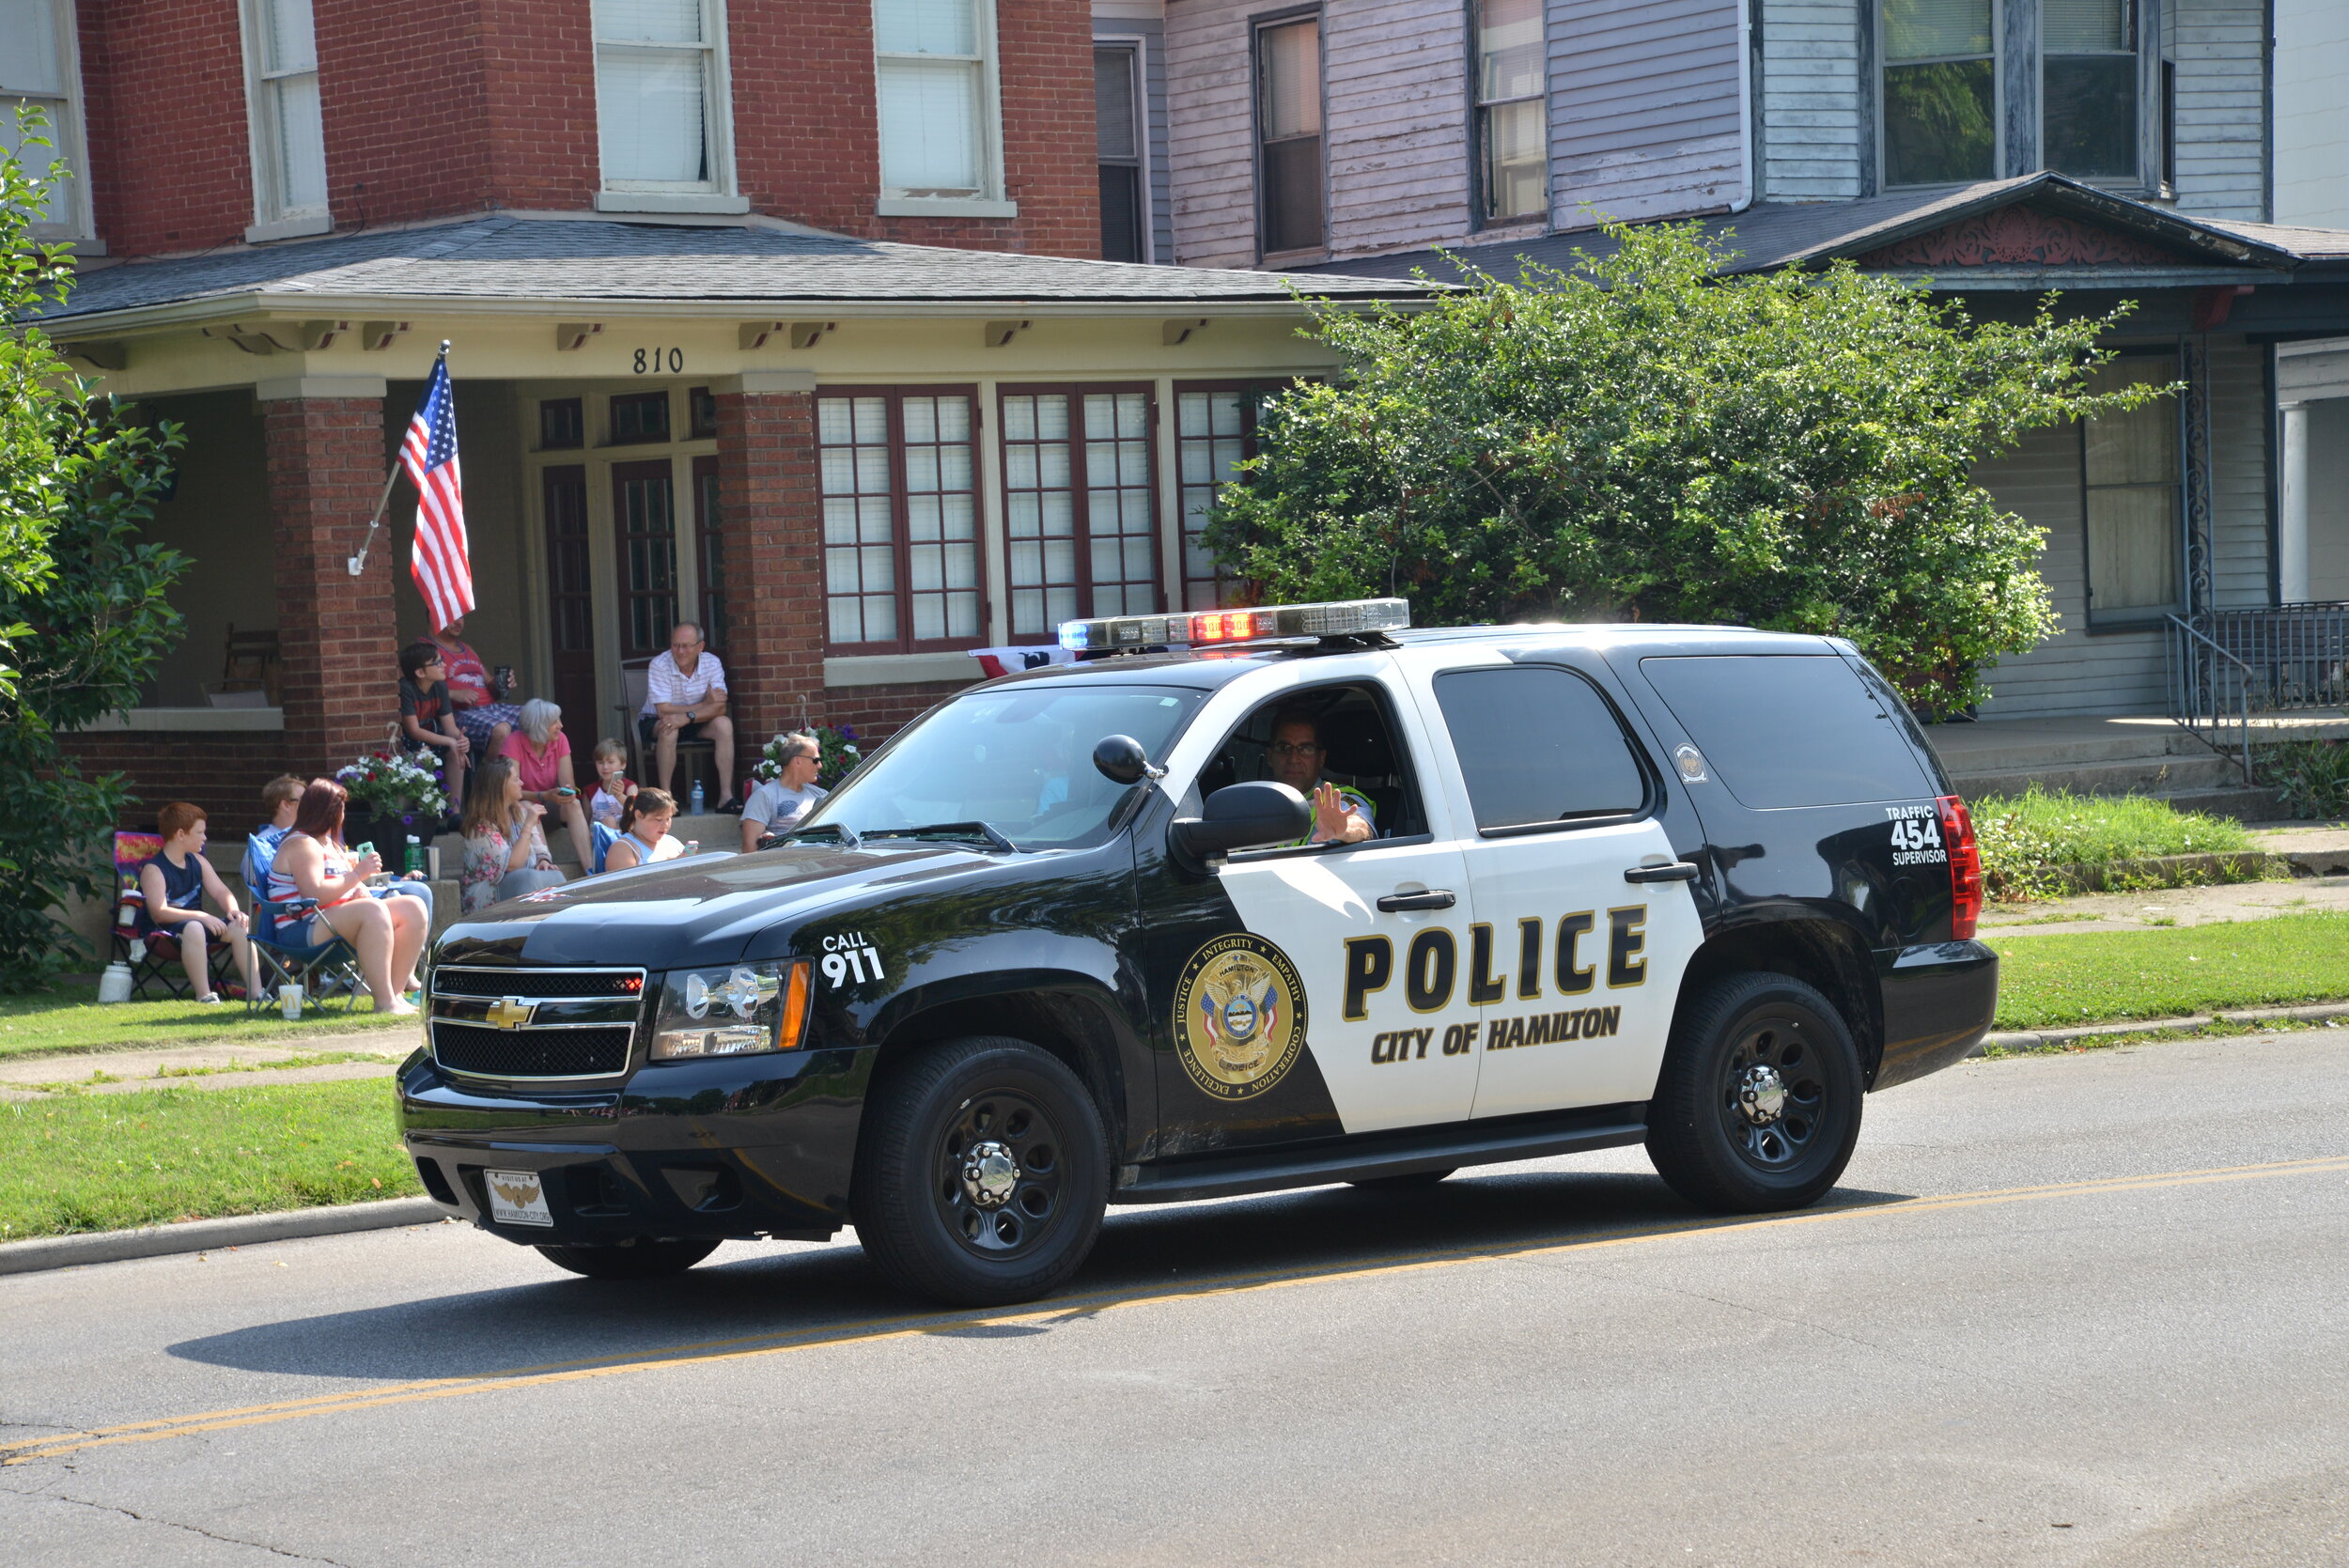 Police — City of Hamilton, OH